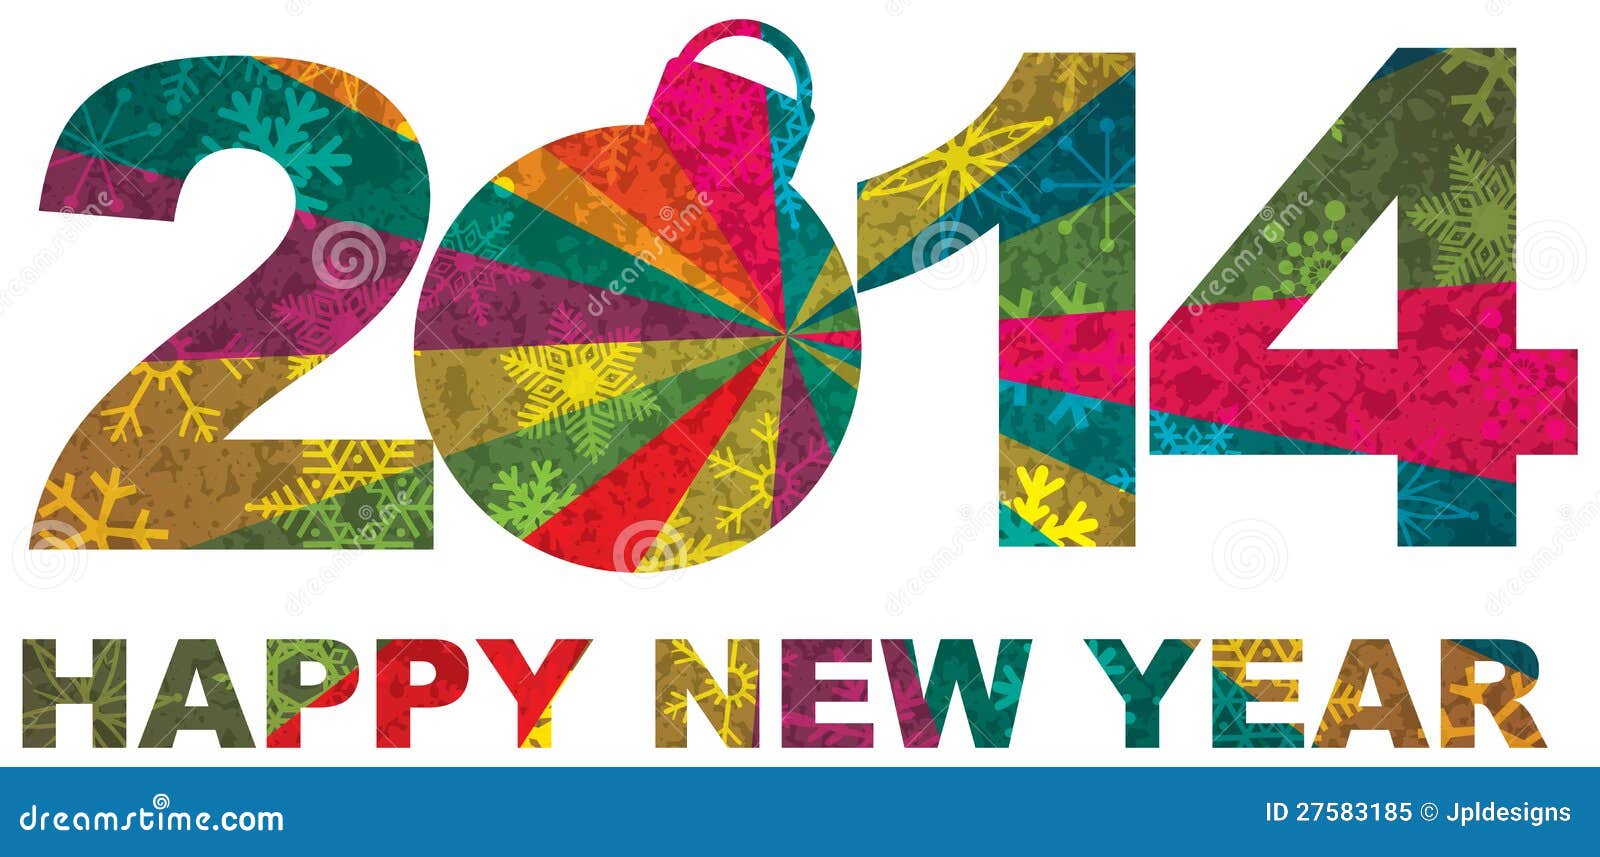 اغلفة والكفرات للفيس بوك 2014,يس بوك للعام الميلادي الجديد 2014 2014-happy-new-year-numerals-27583185